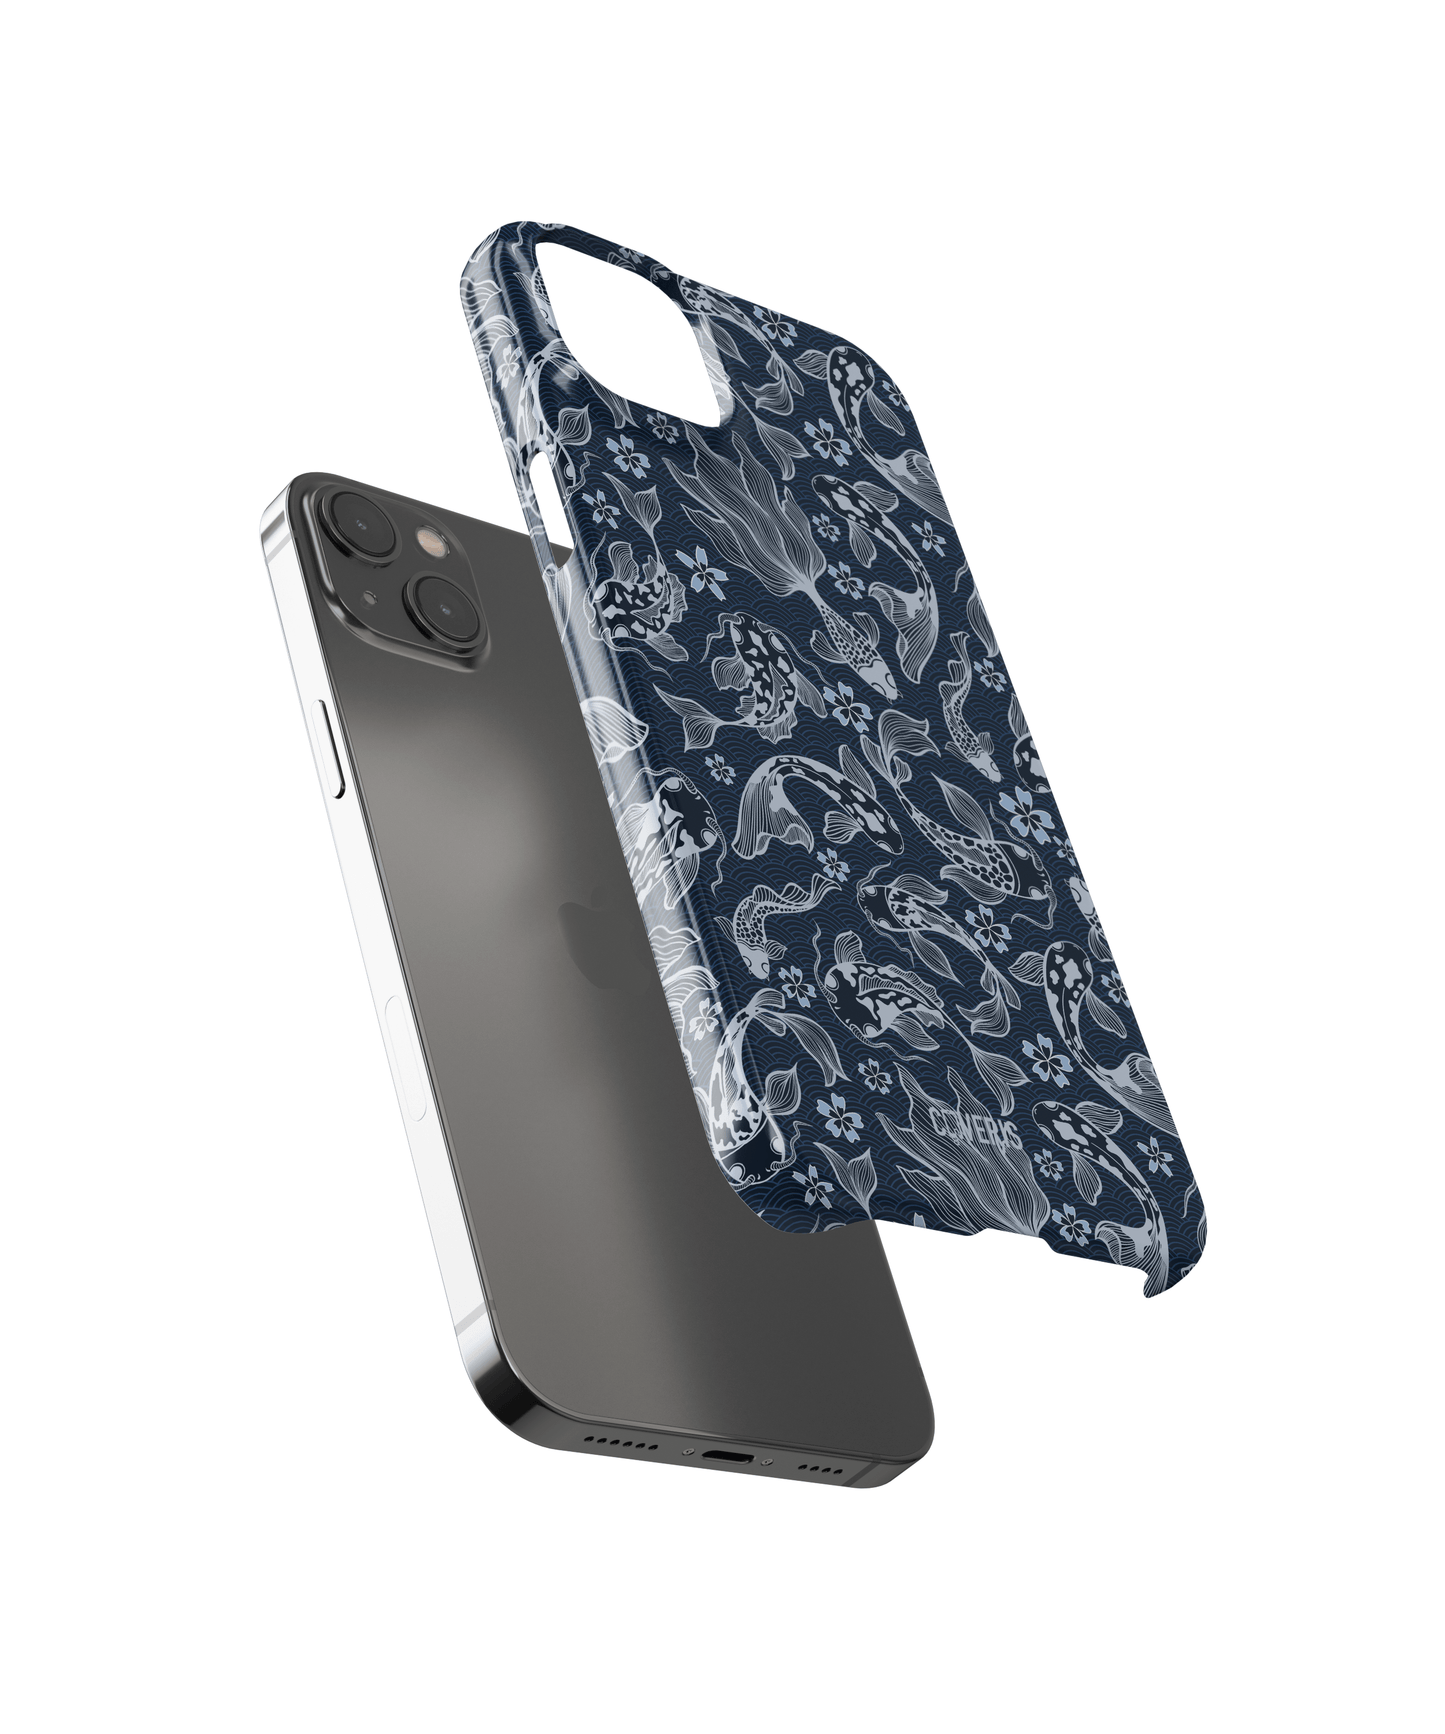 Fishtopia - Samsung Galaxy A21S phone case